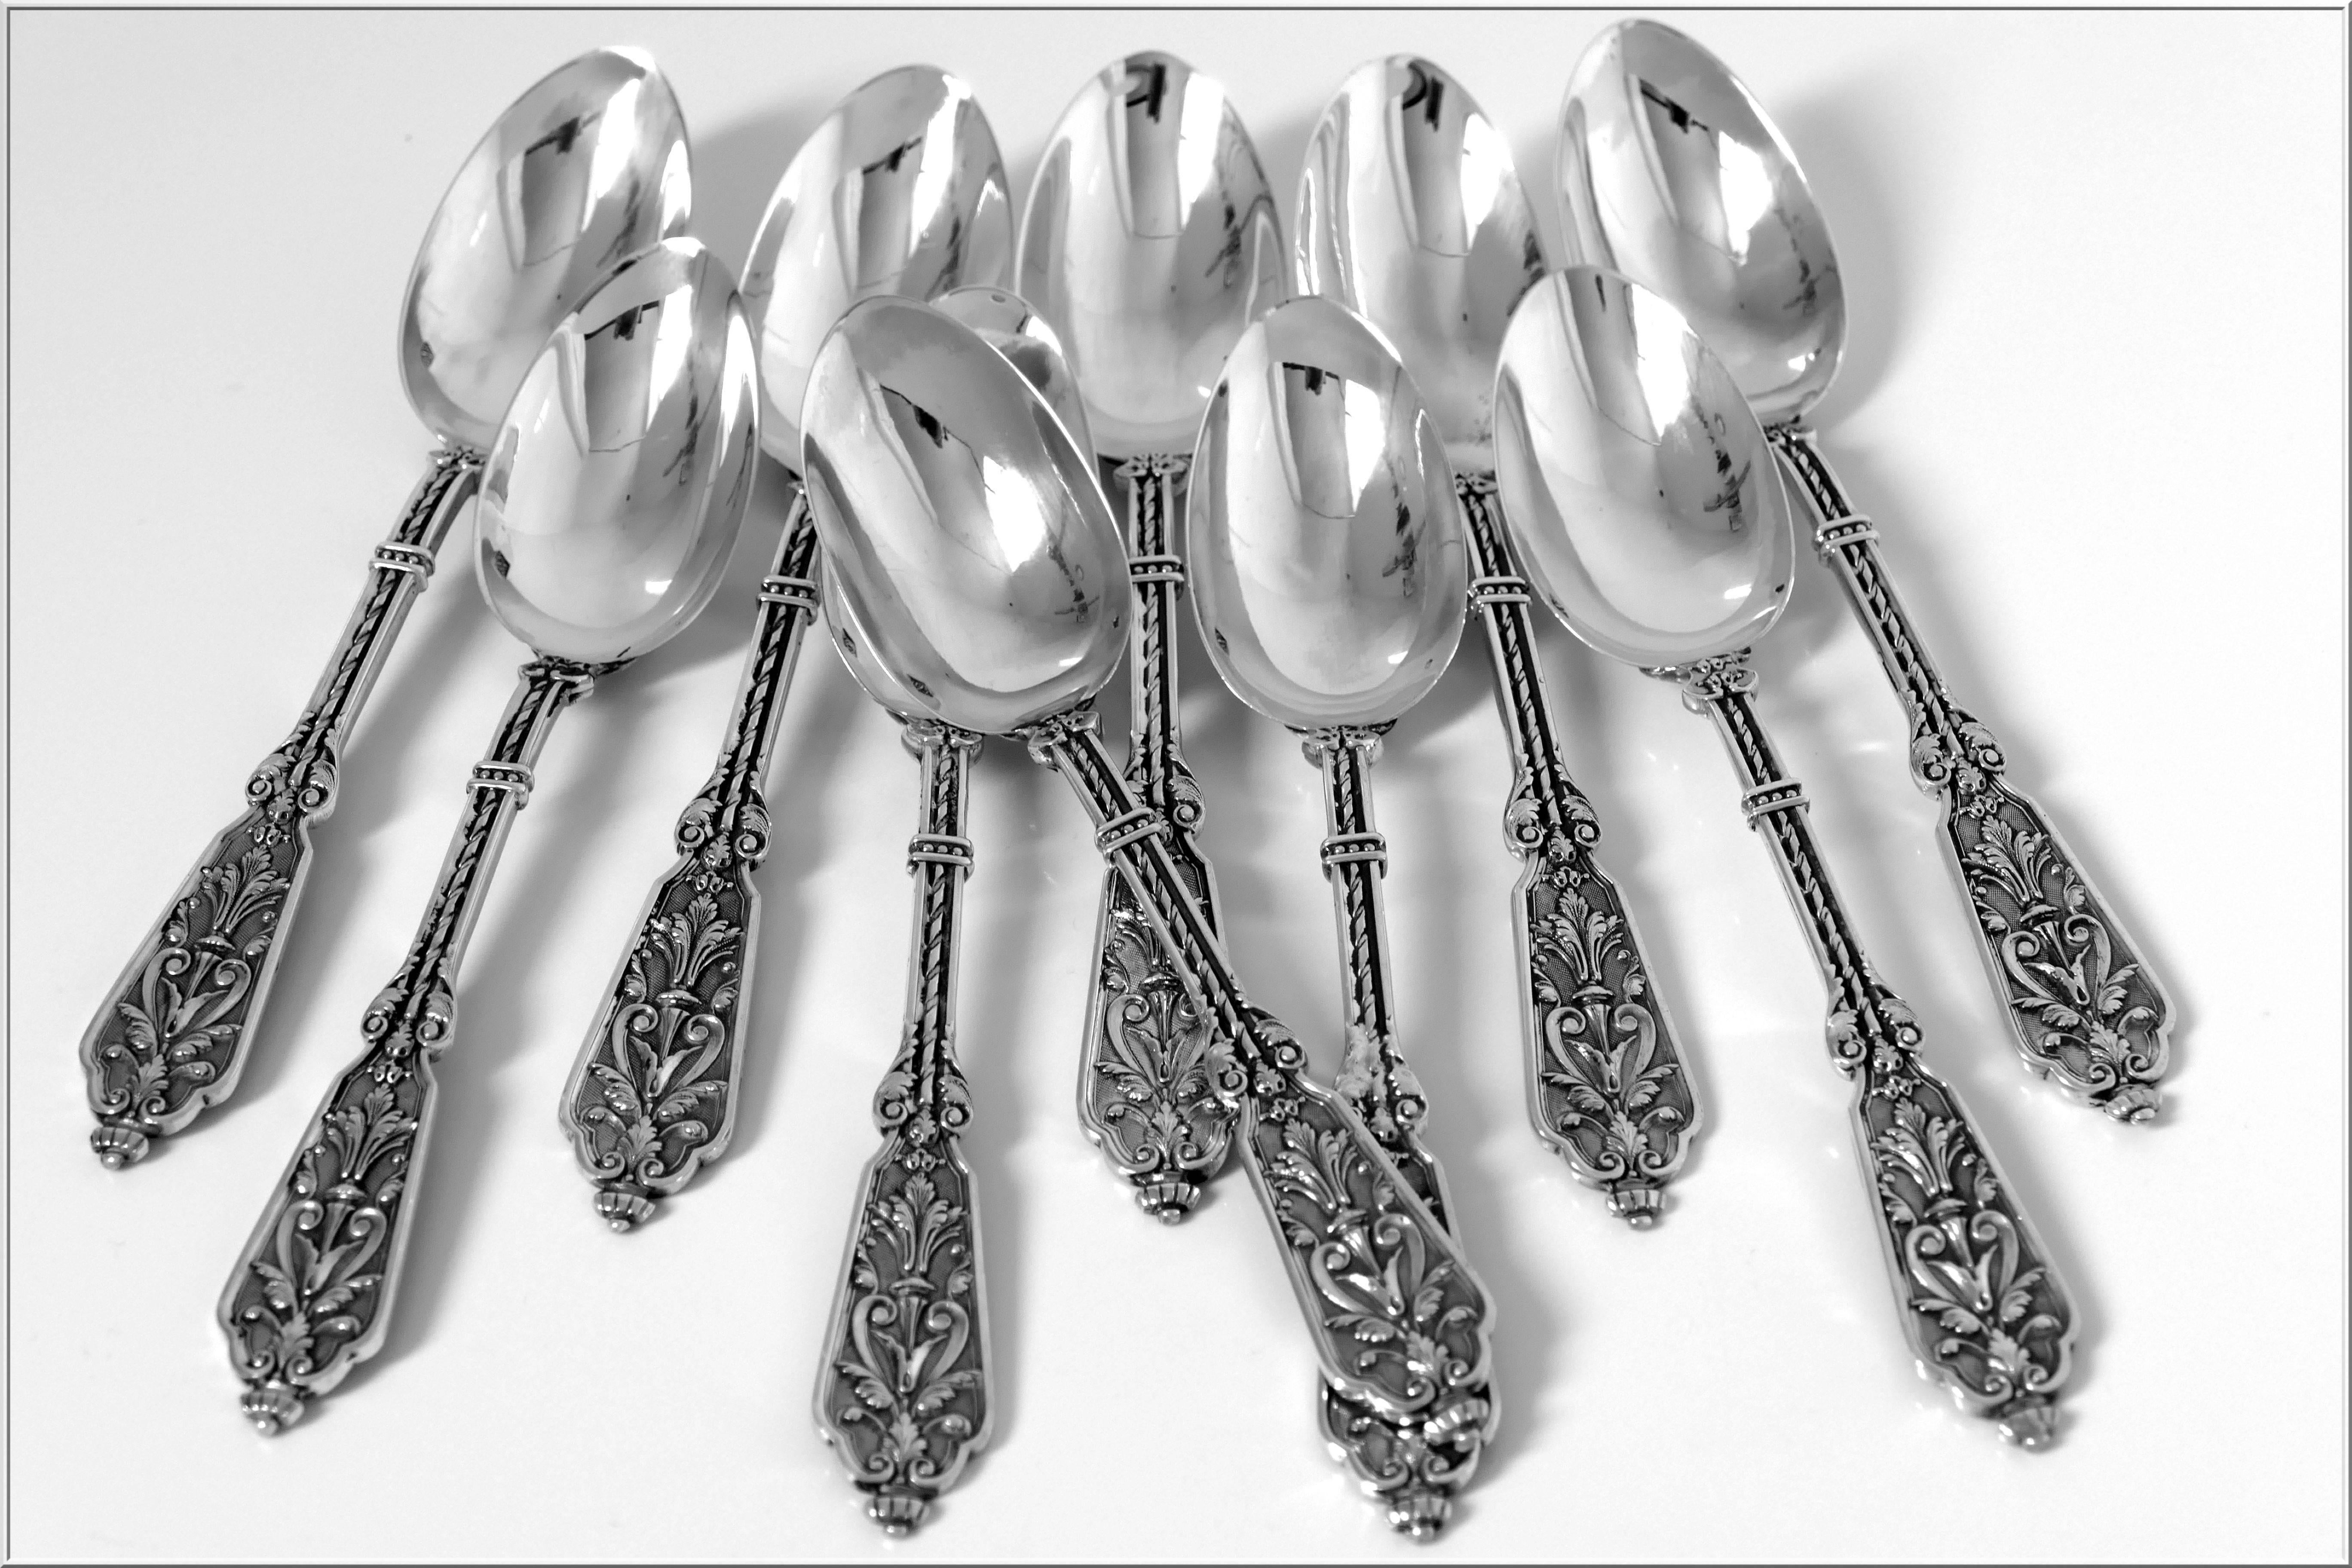 Puiforcat Rare French Sterling Silver Tea/Dessert Spoons Set Renaissance 2